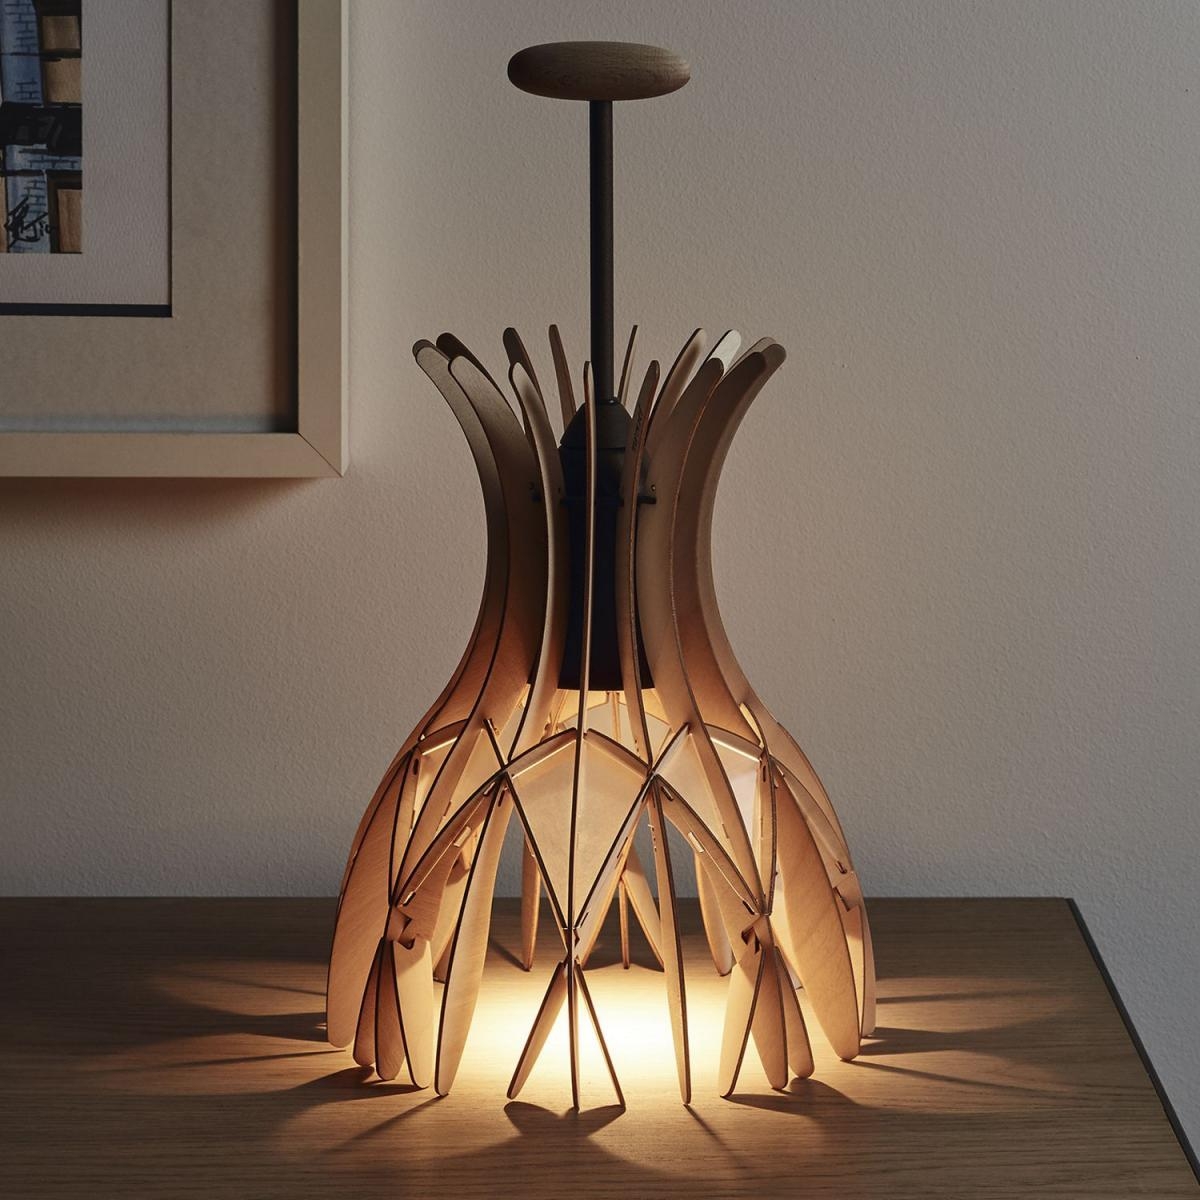 Mehr besondere #Tischdekoration durch die #Domita #Tischlampe von #Bover bei #lights4life #Natur #Holz
